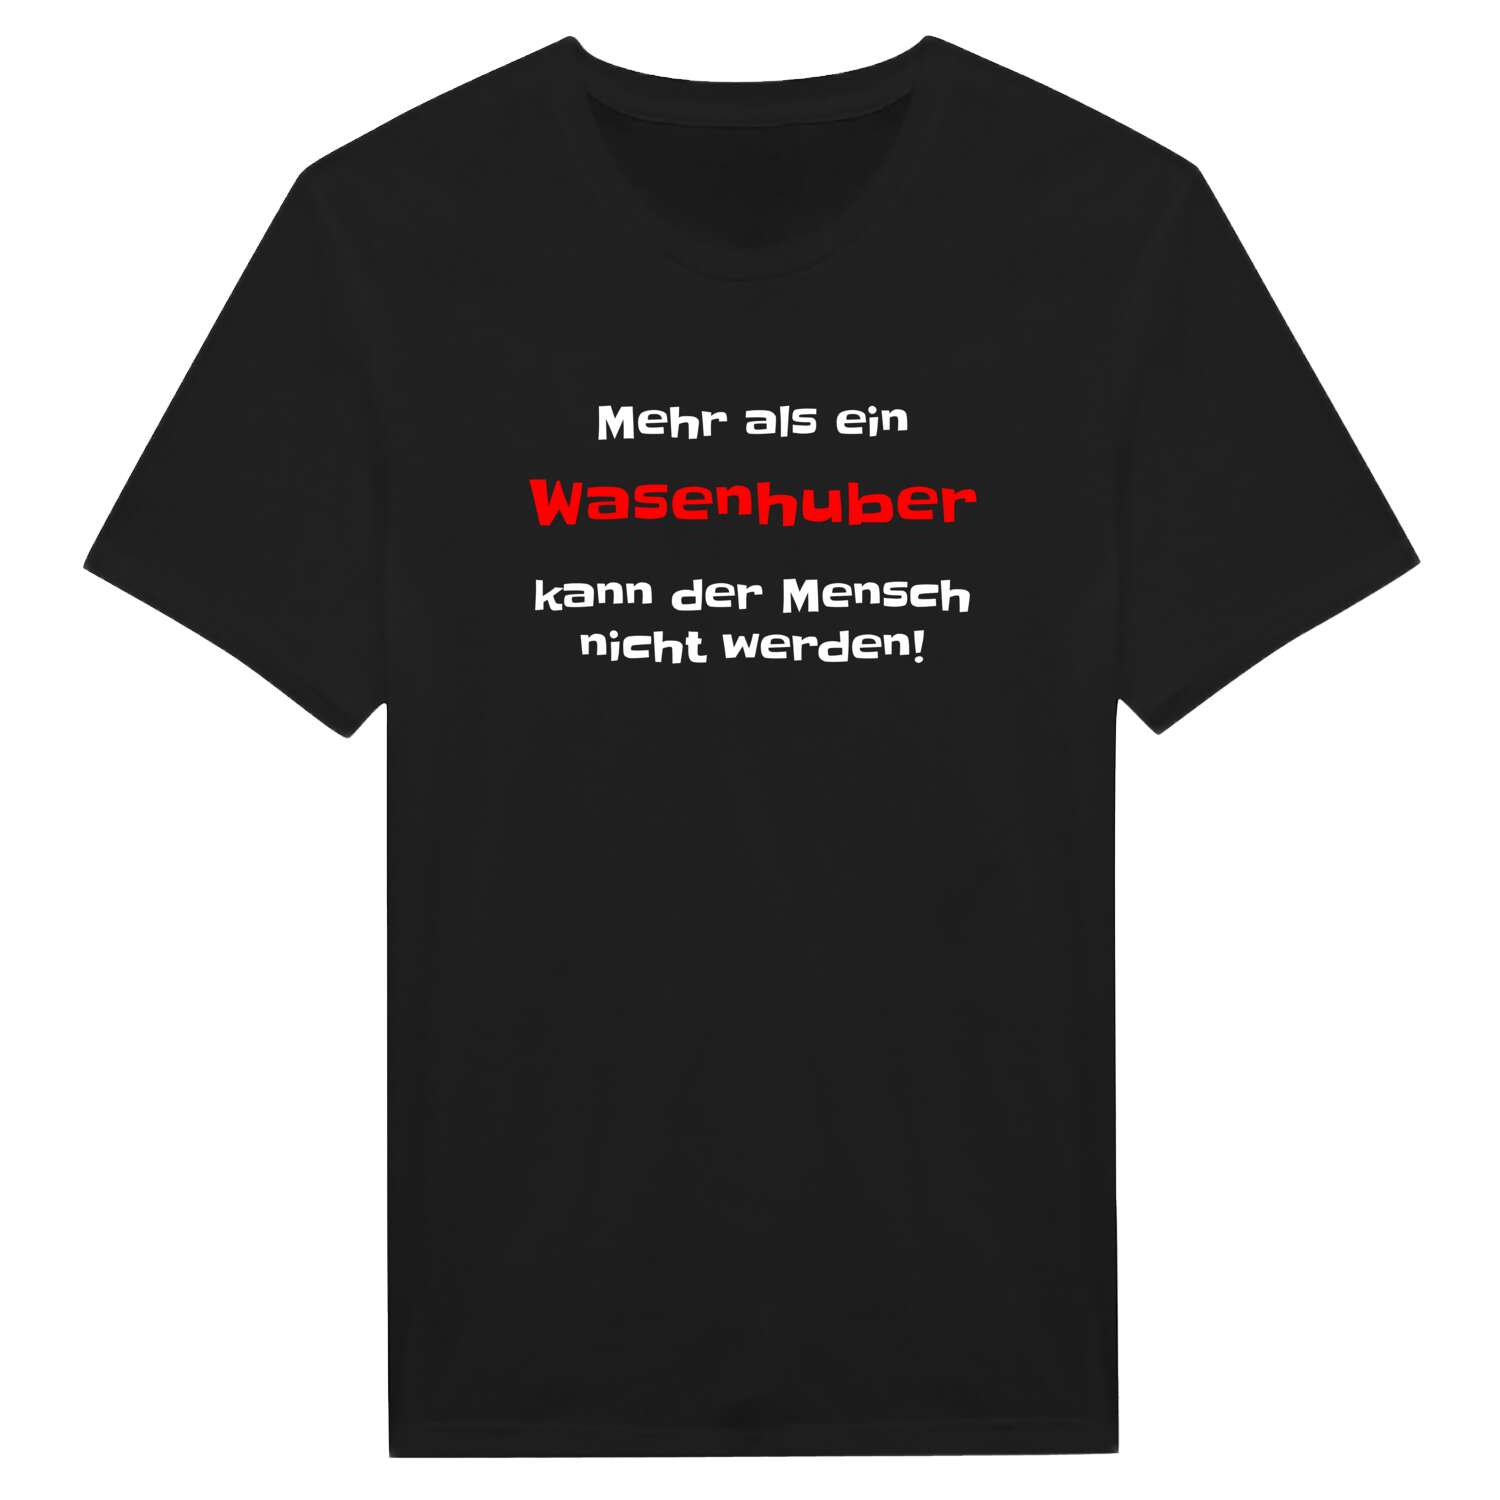 Wasenhub T-Shirt »Mehr als ein«